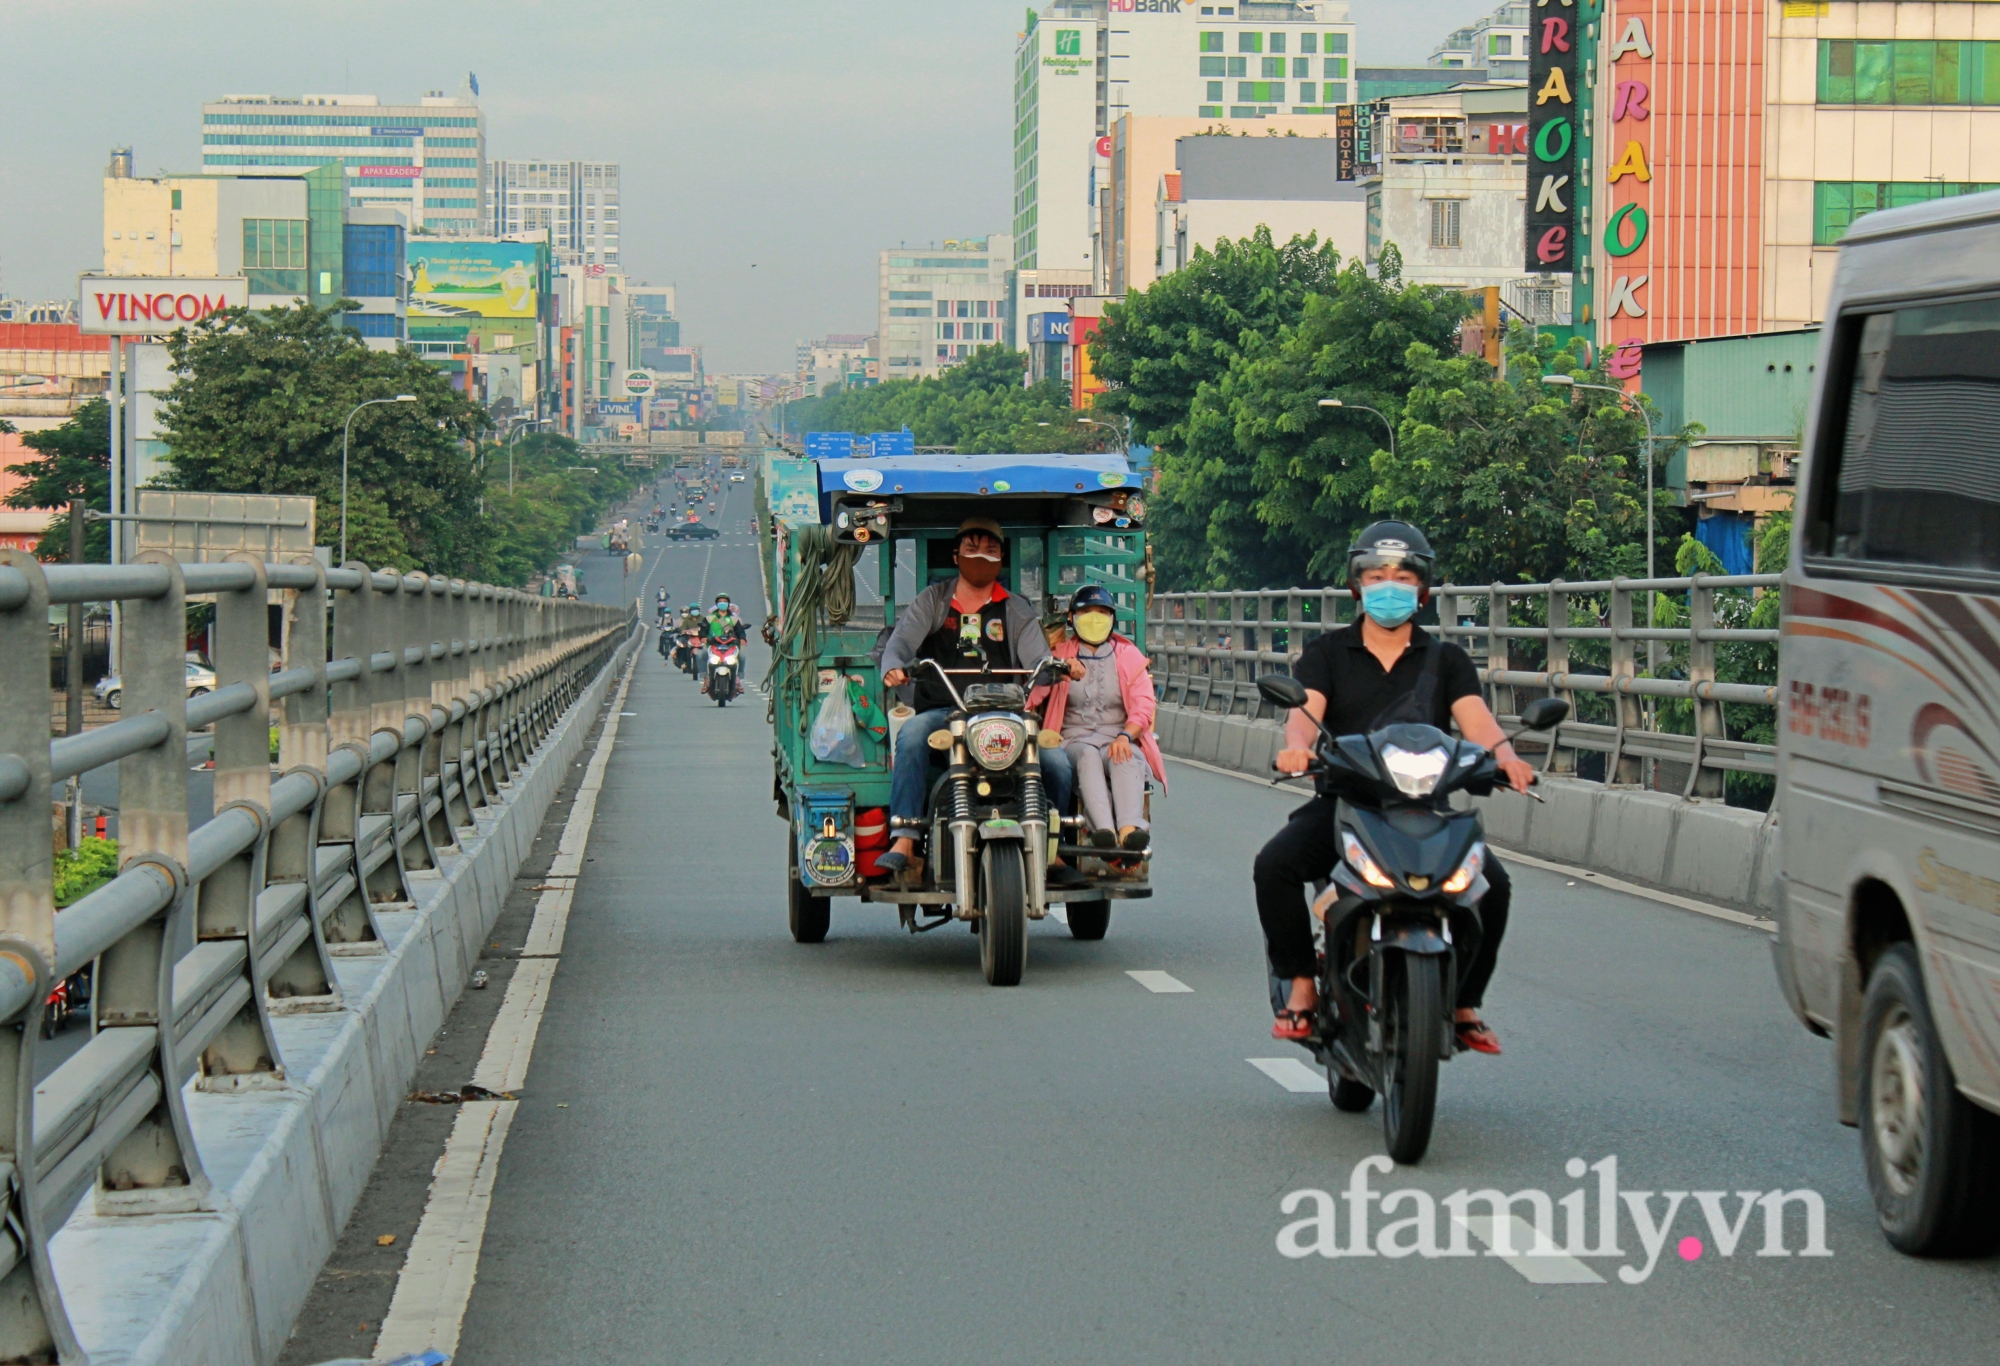 Chùm Ảnh: Đường phố Sài Gòn ngày đầu tiên nới lỏng - Ảnh 2.